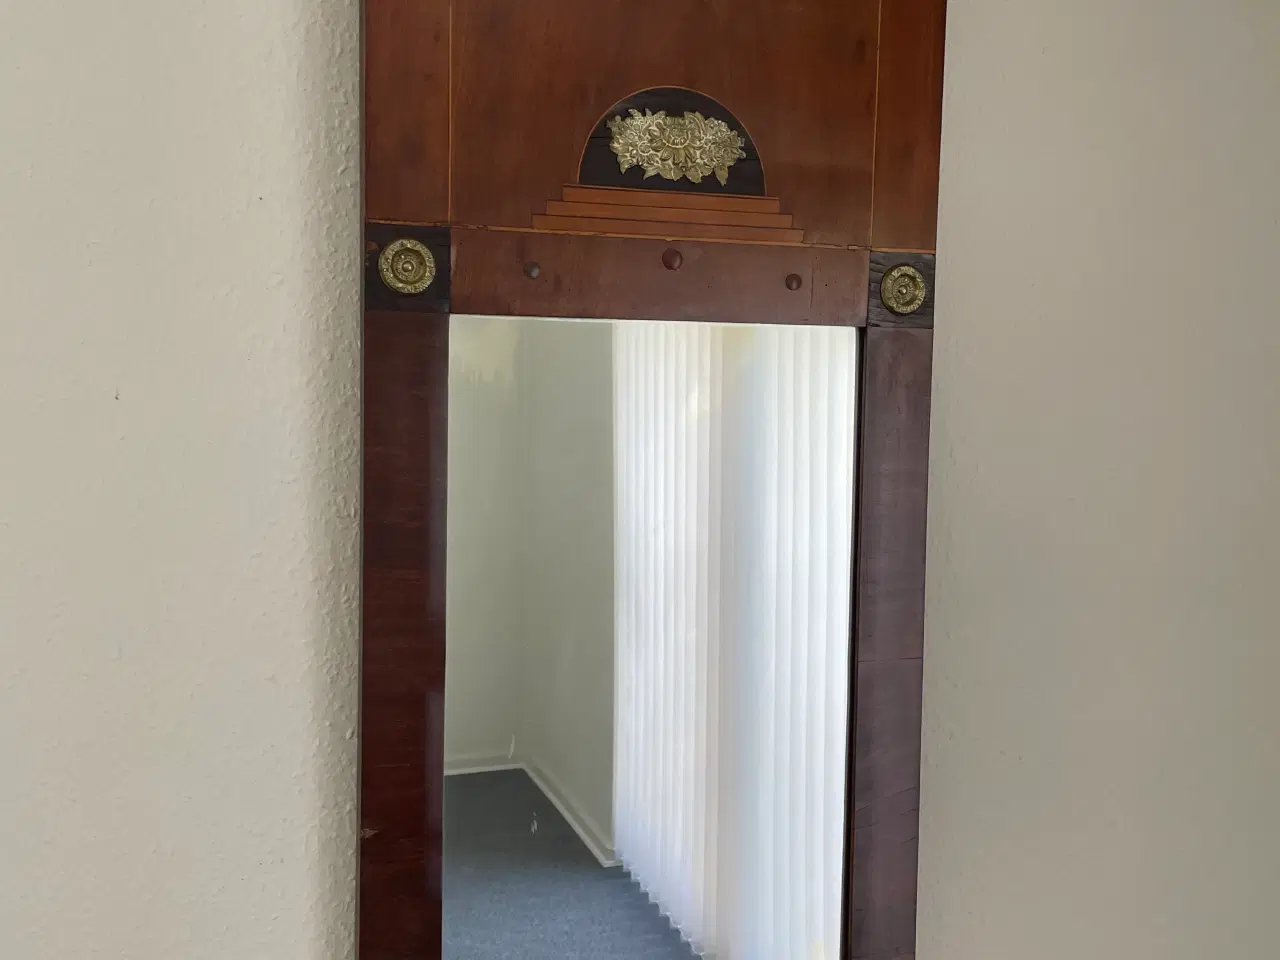 Billede 2 - Antikt spejl